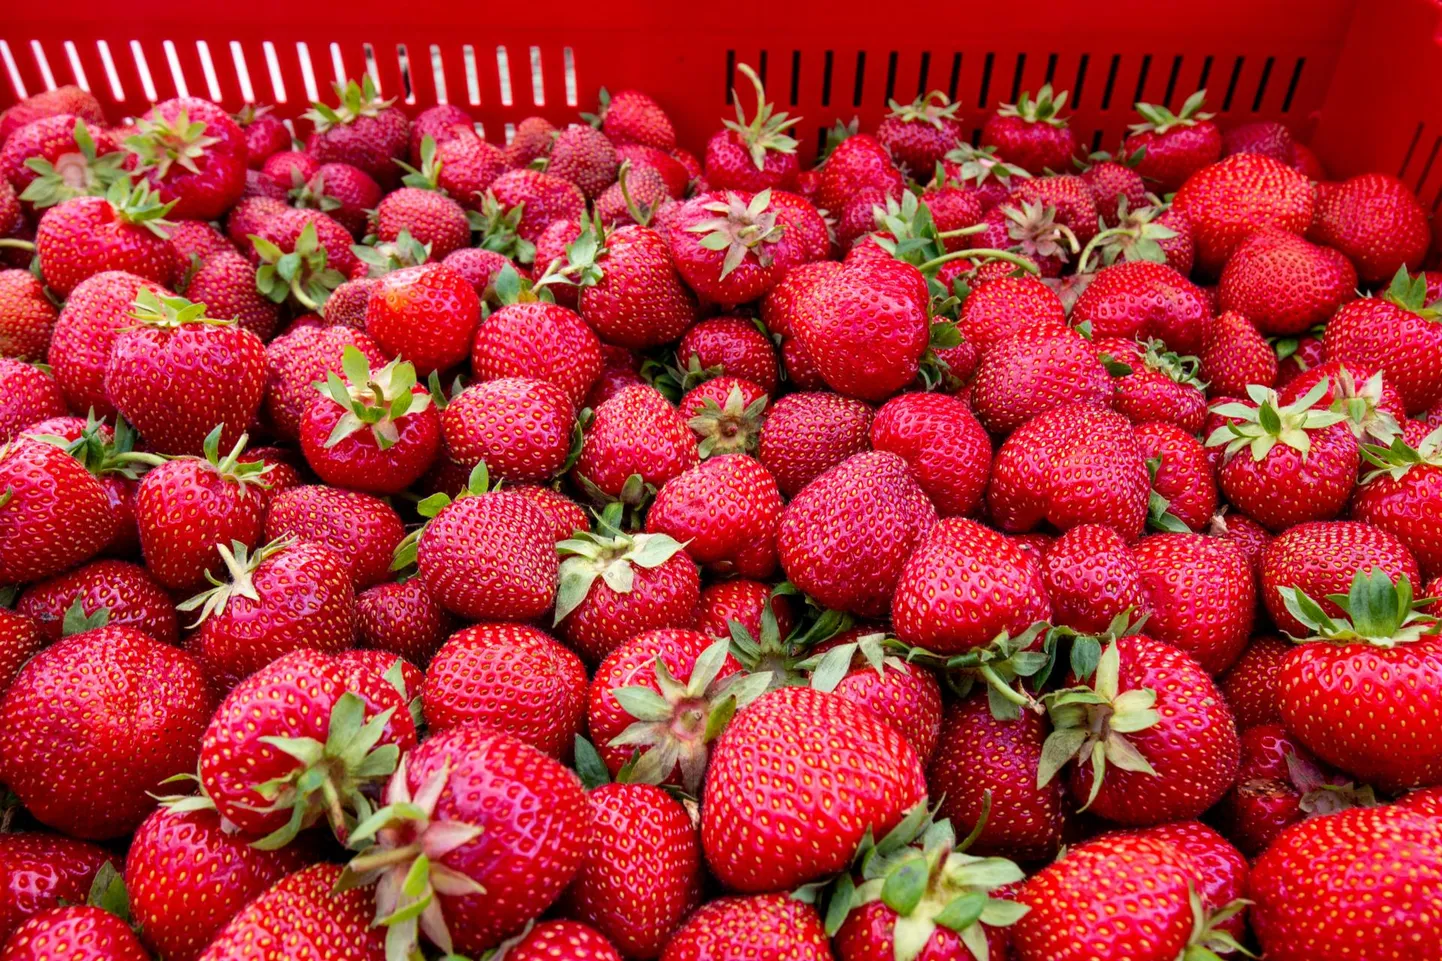 Eestlane küll kiidab kodumaise maasika maitset, kui kuid odavam hind kallutab valiku järjest enam lõuna poolt tulevate marjade kasuks.